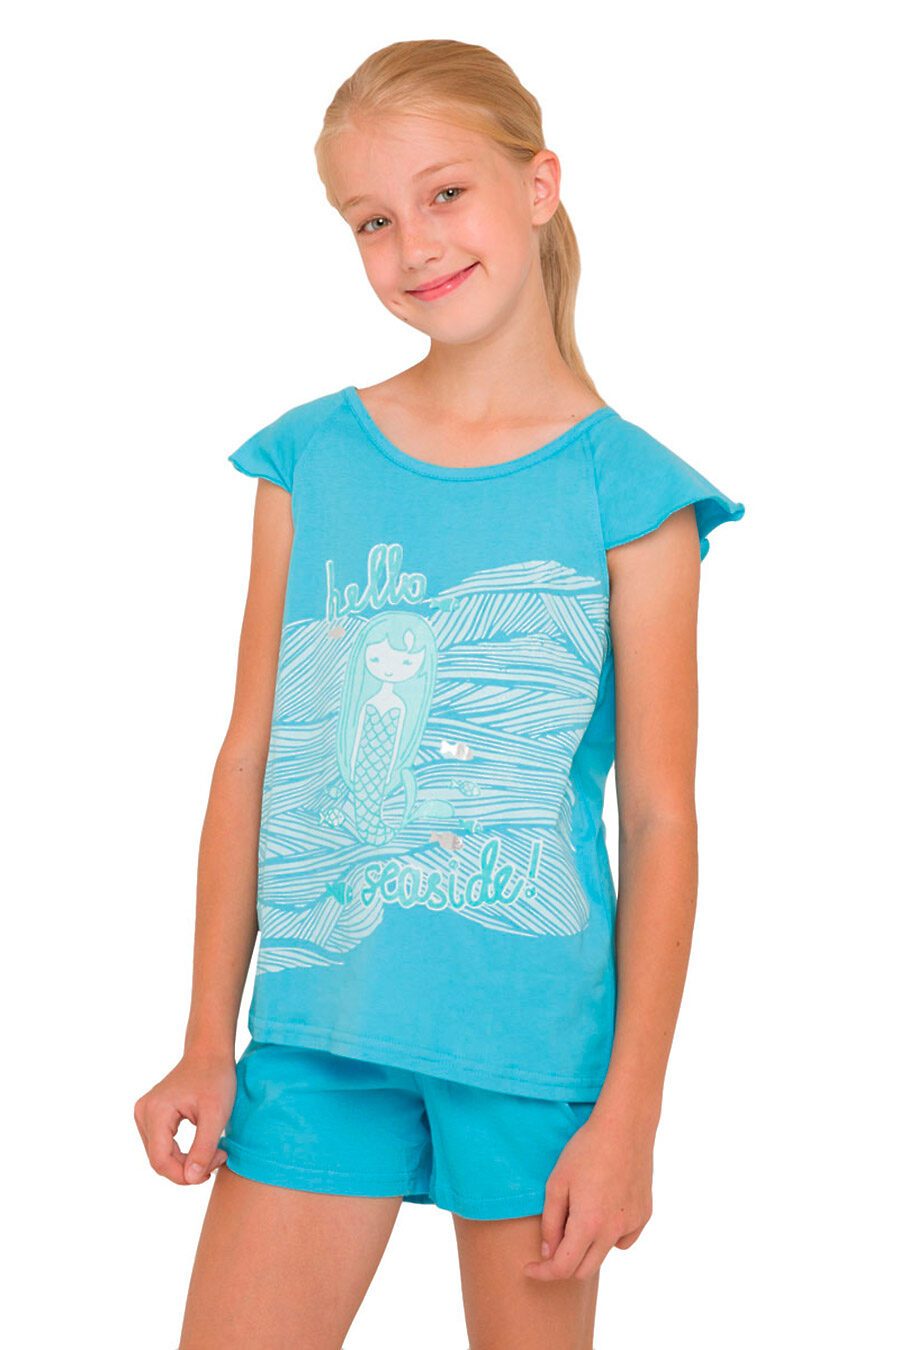 Пижама (футболка+шорты) для девочек N.O.A. 666277 купить оптом от производителя. Совместная покупка детской одежды в OptMoyo